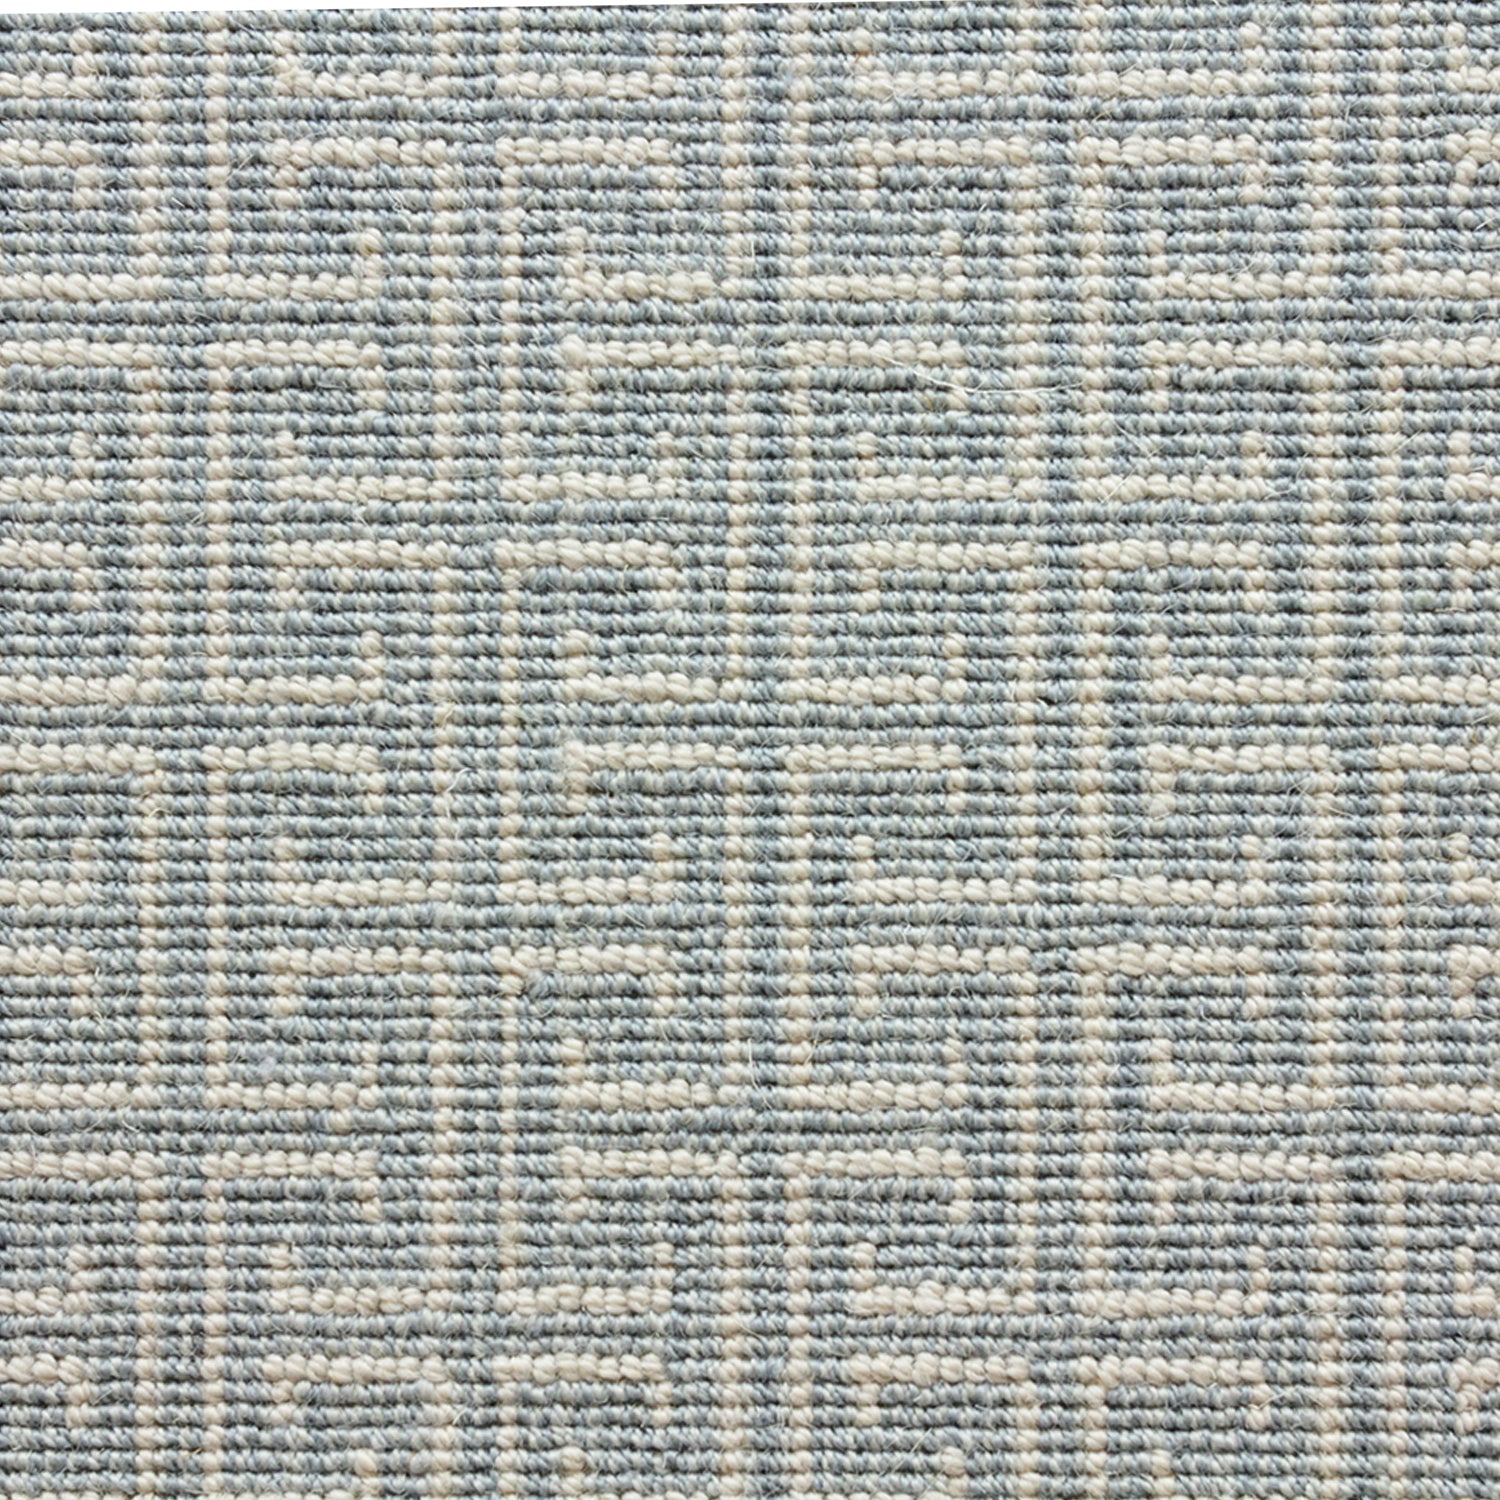 Wool-blend broadloom carpet swatch in an interlocking linear print in sky blue on a cream field.